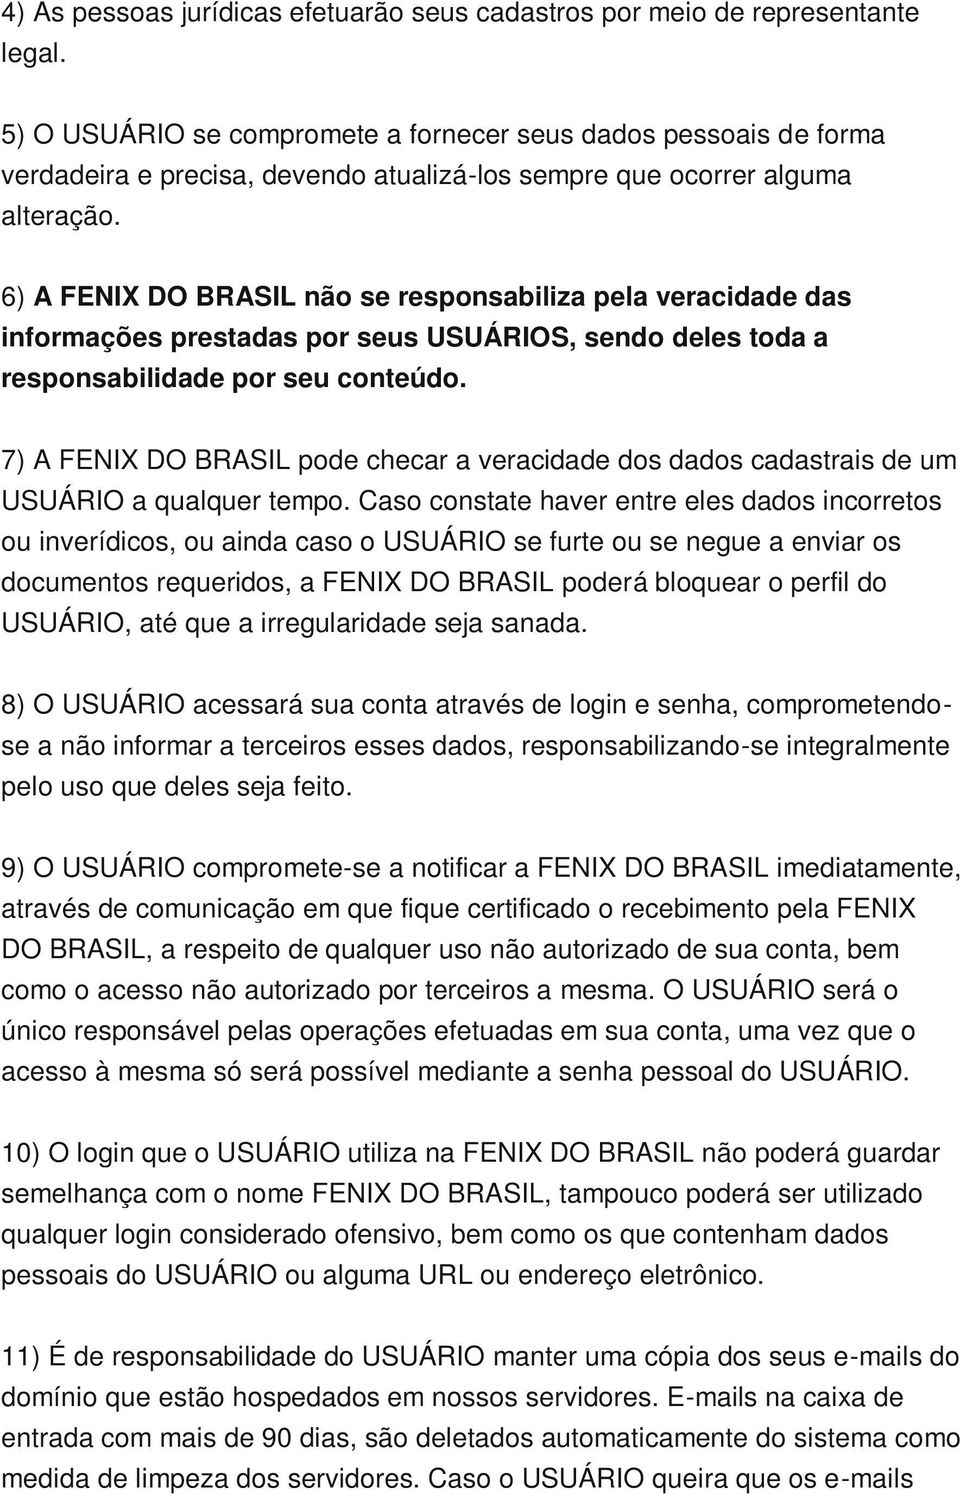 6) A FENIX DO BRASIL não se responsabiliza pela veracidade das informações prestadas por seus USUÁRIOS, sendo deles toda a responsabilidade por seu conteúdo.